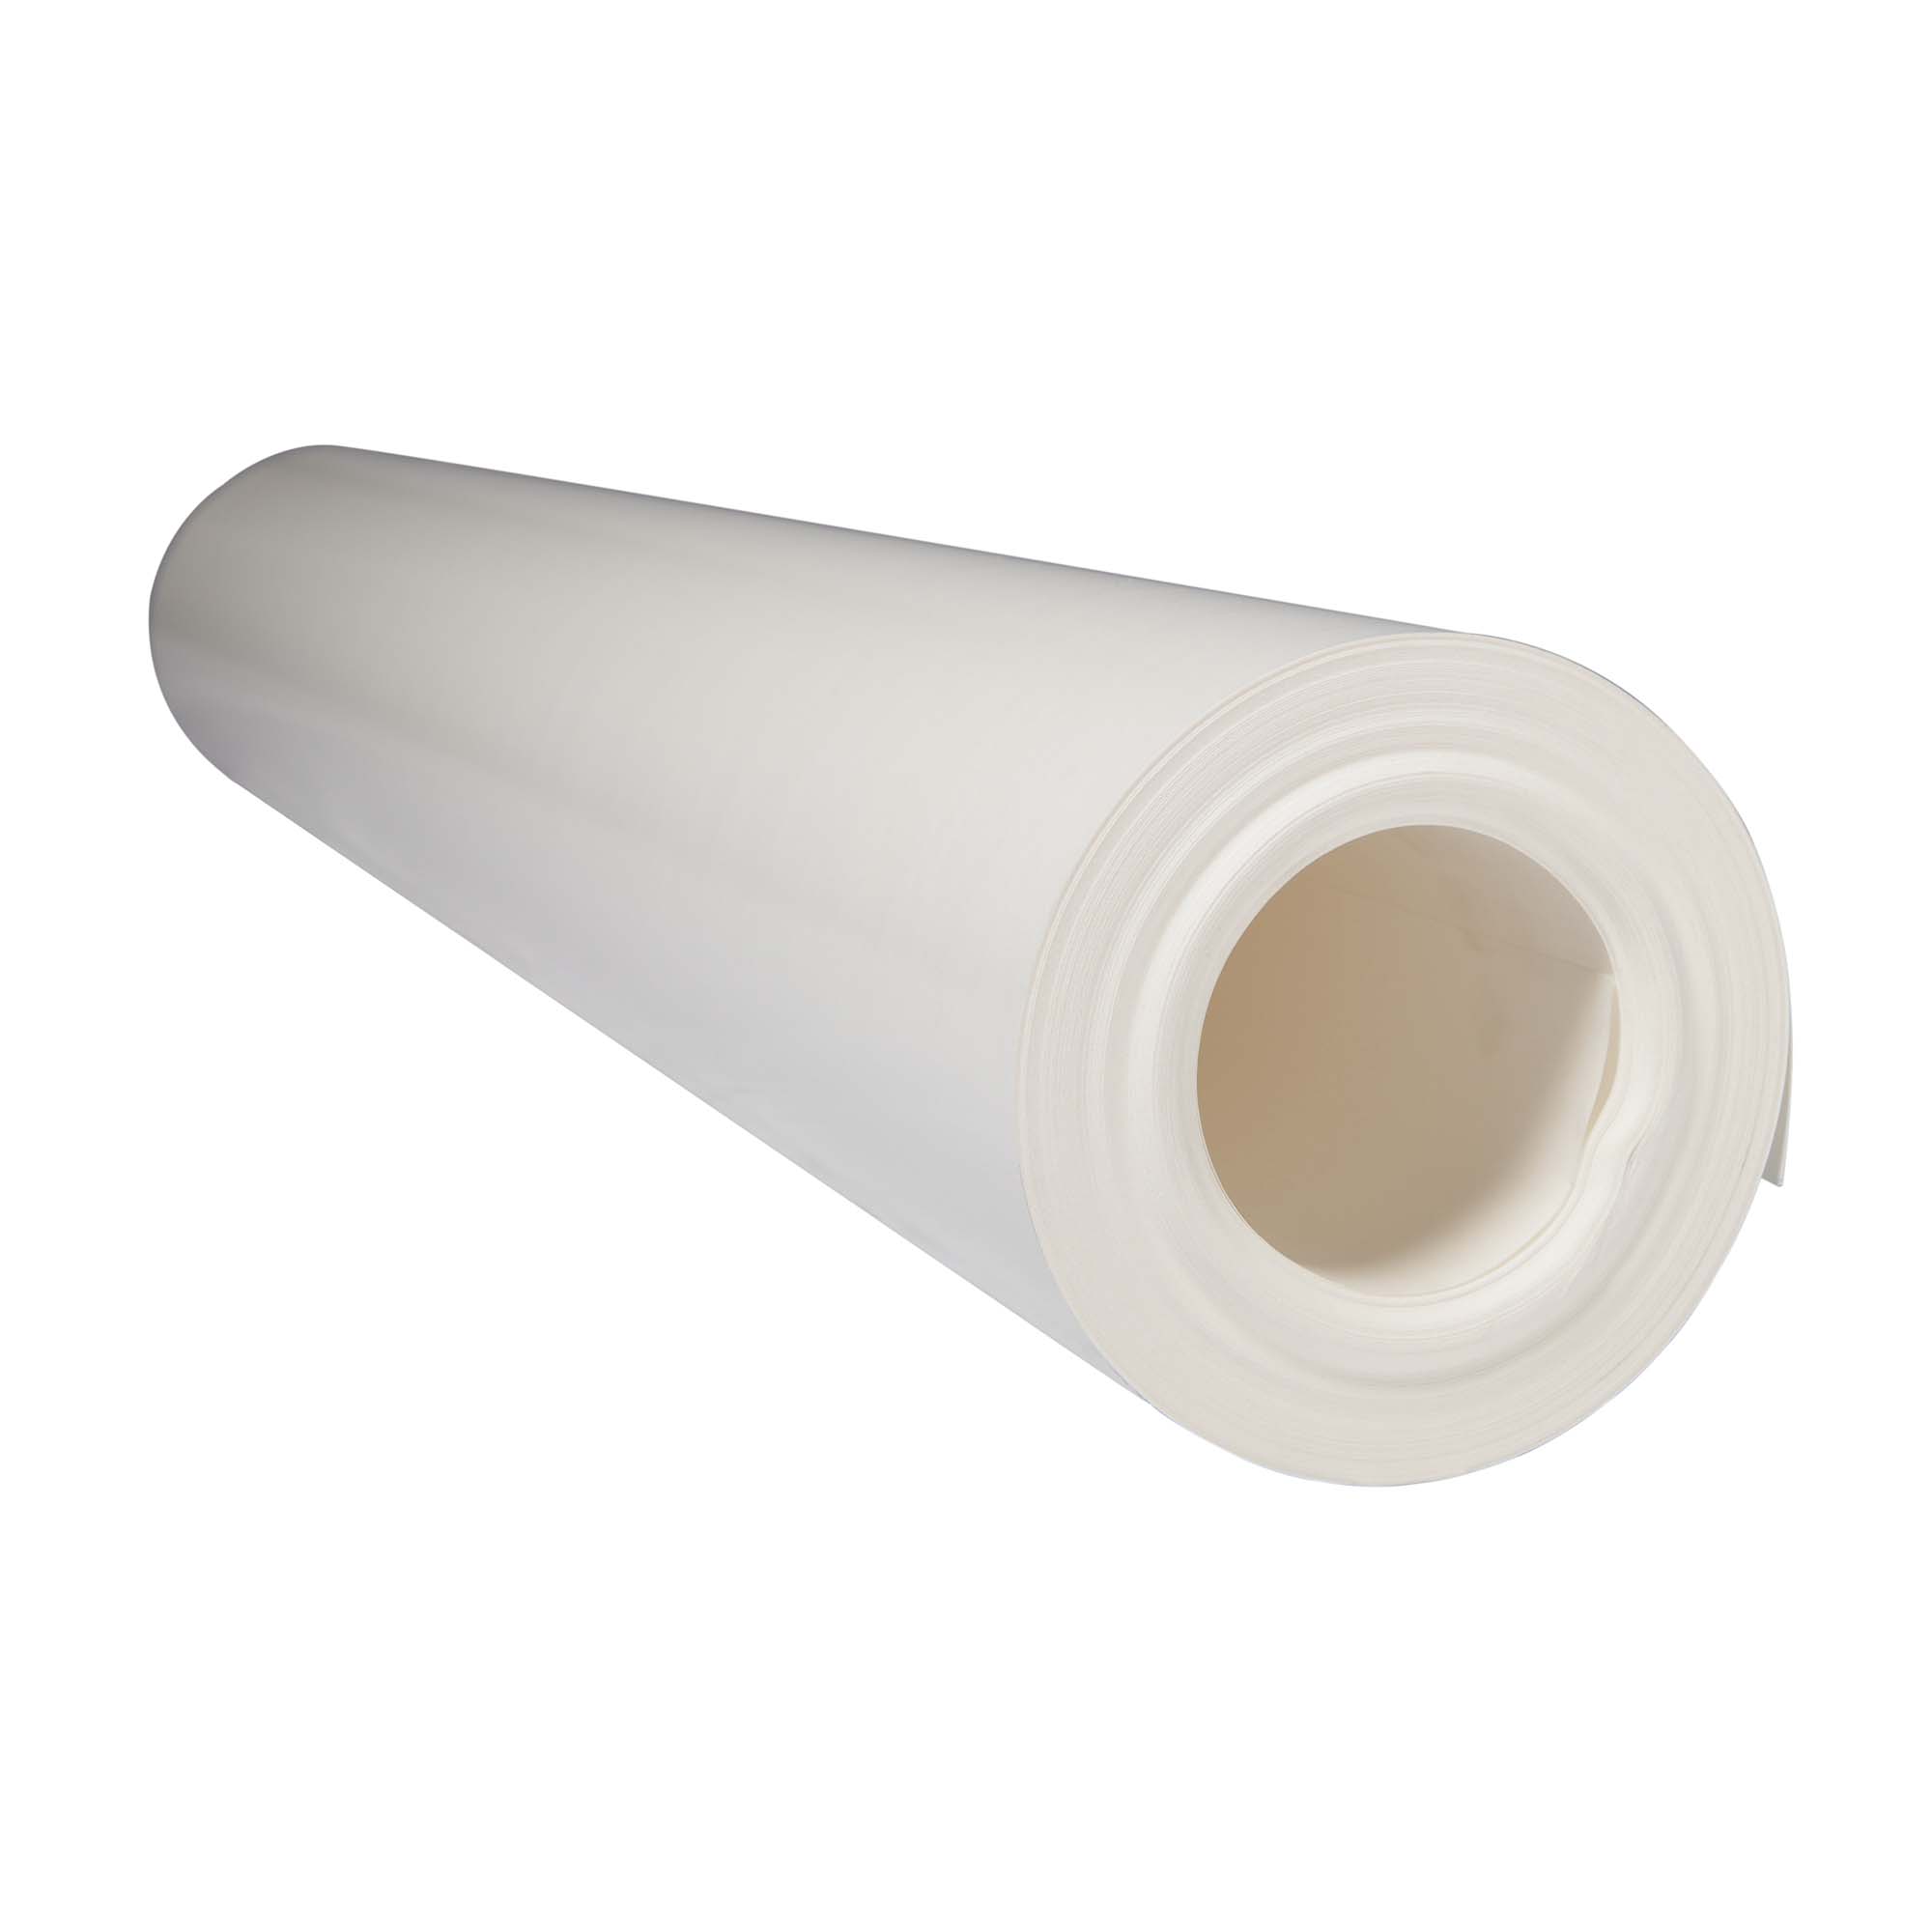 Abdeckpappe Milchtütenpapier weiß 1 x 55 m beidseitig PE Folie beschichtet 200-220 g/m²